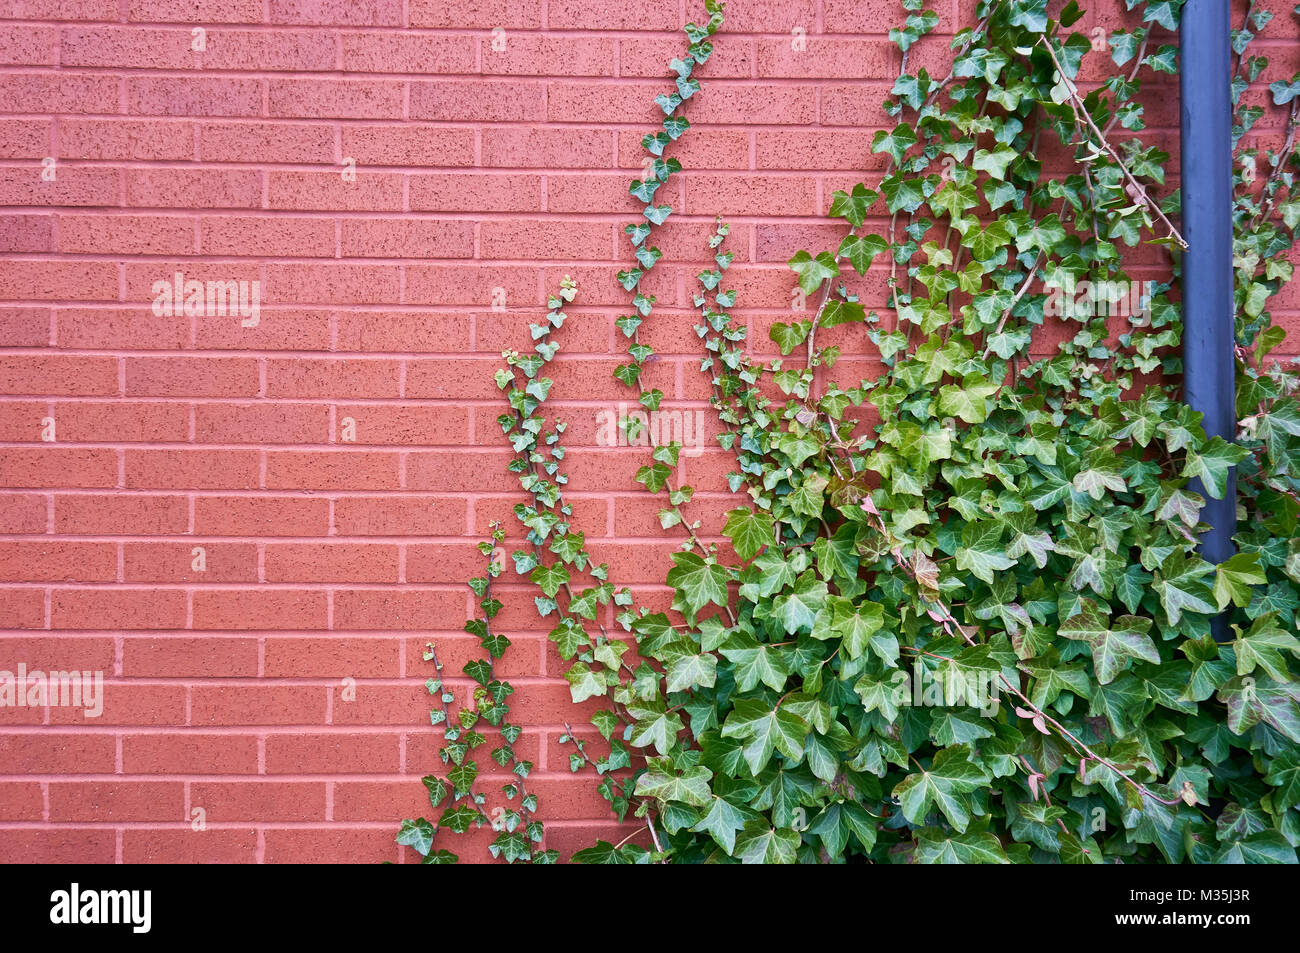 Eine rote Mauer mit einer klettern Efeu Pflanze. Stockfoto